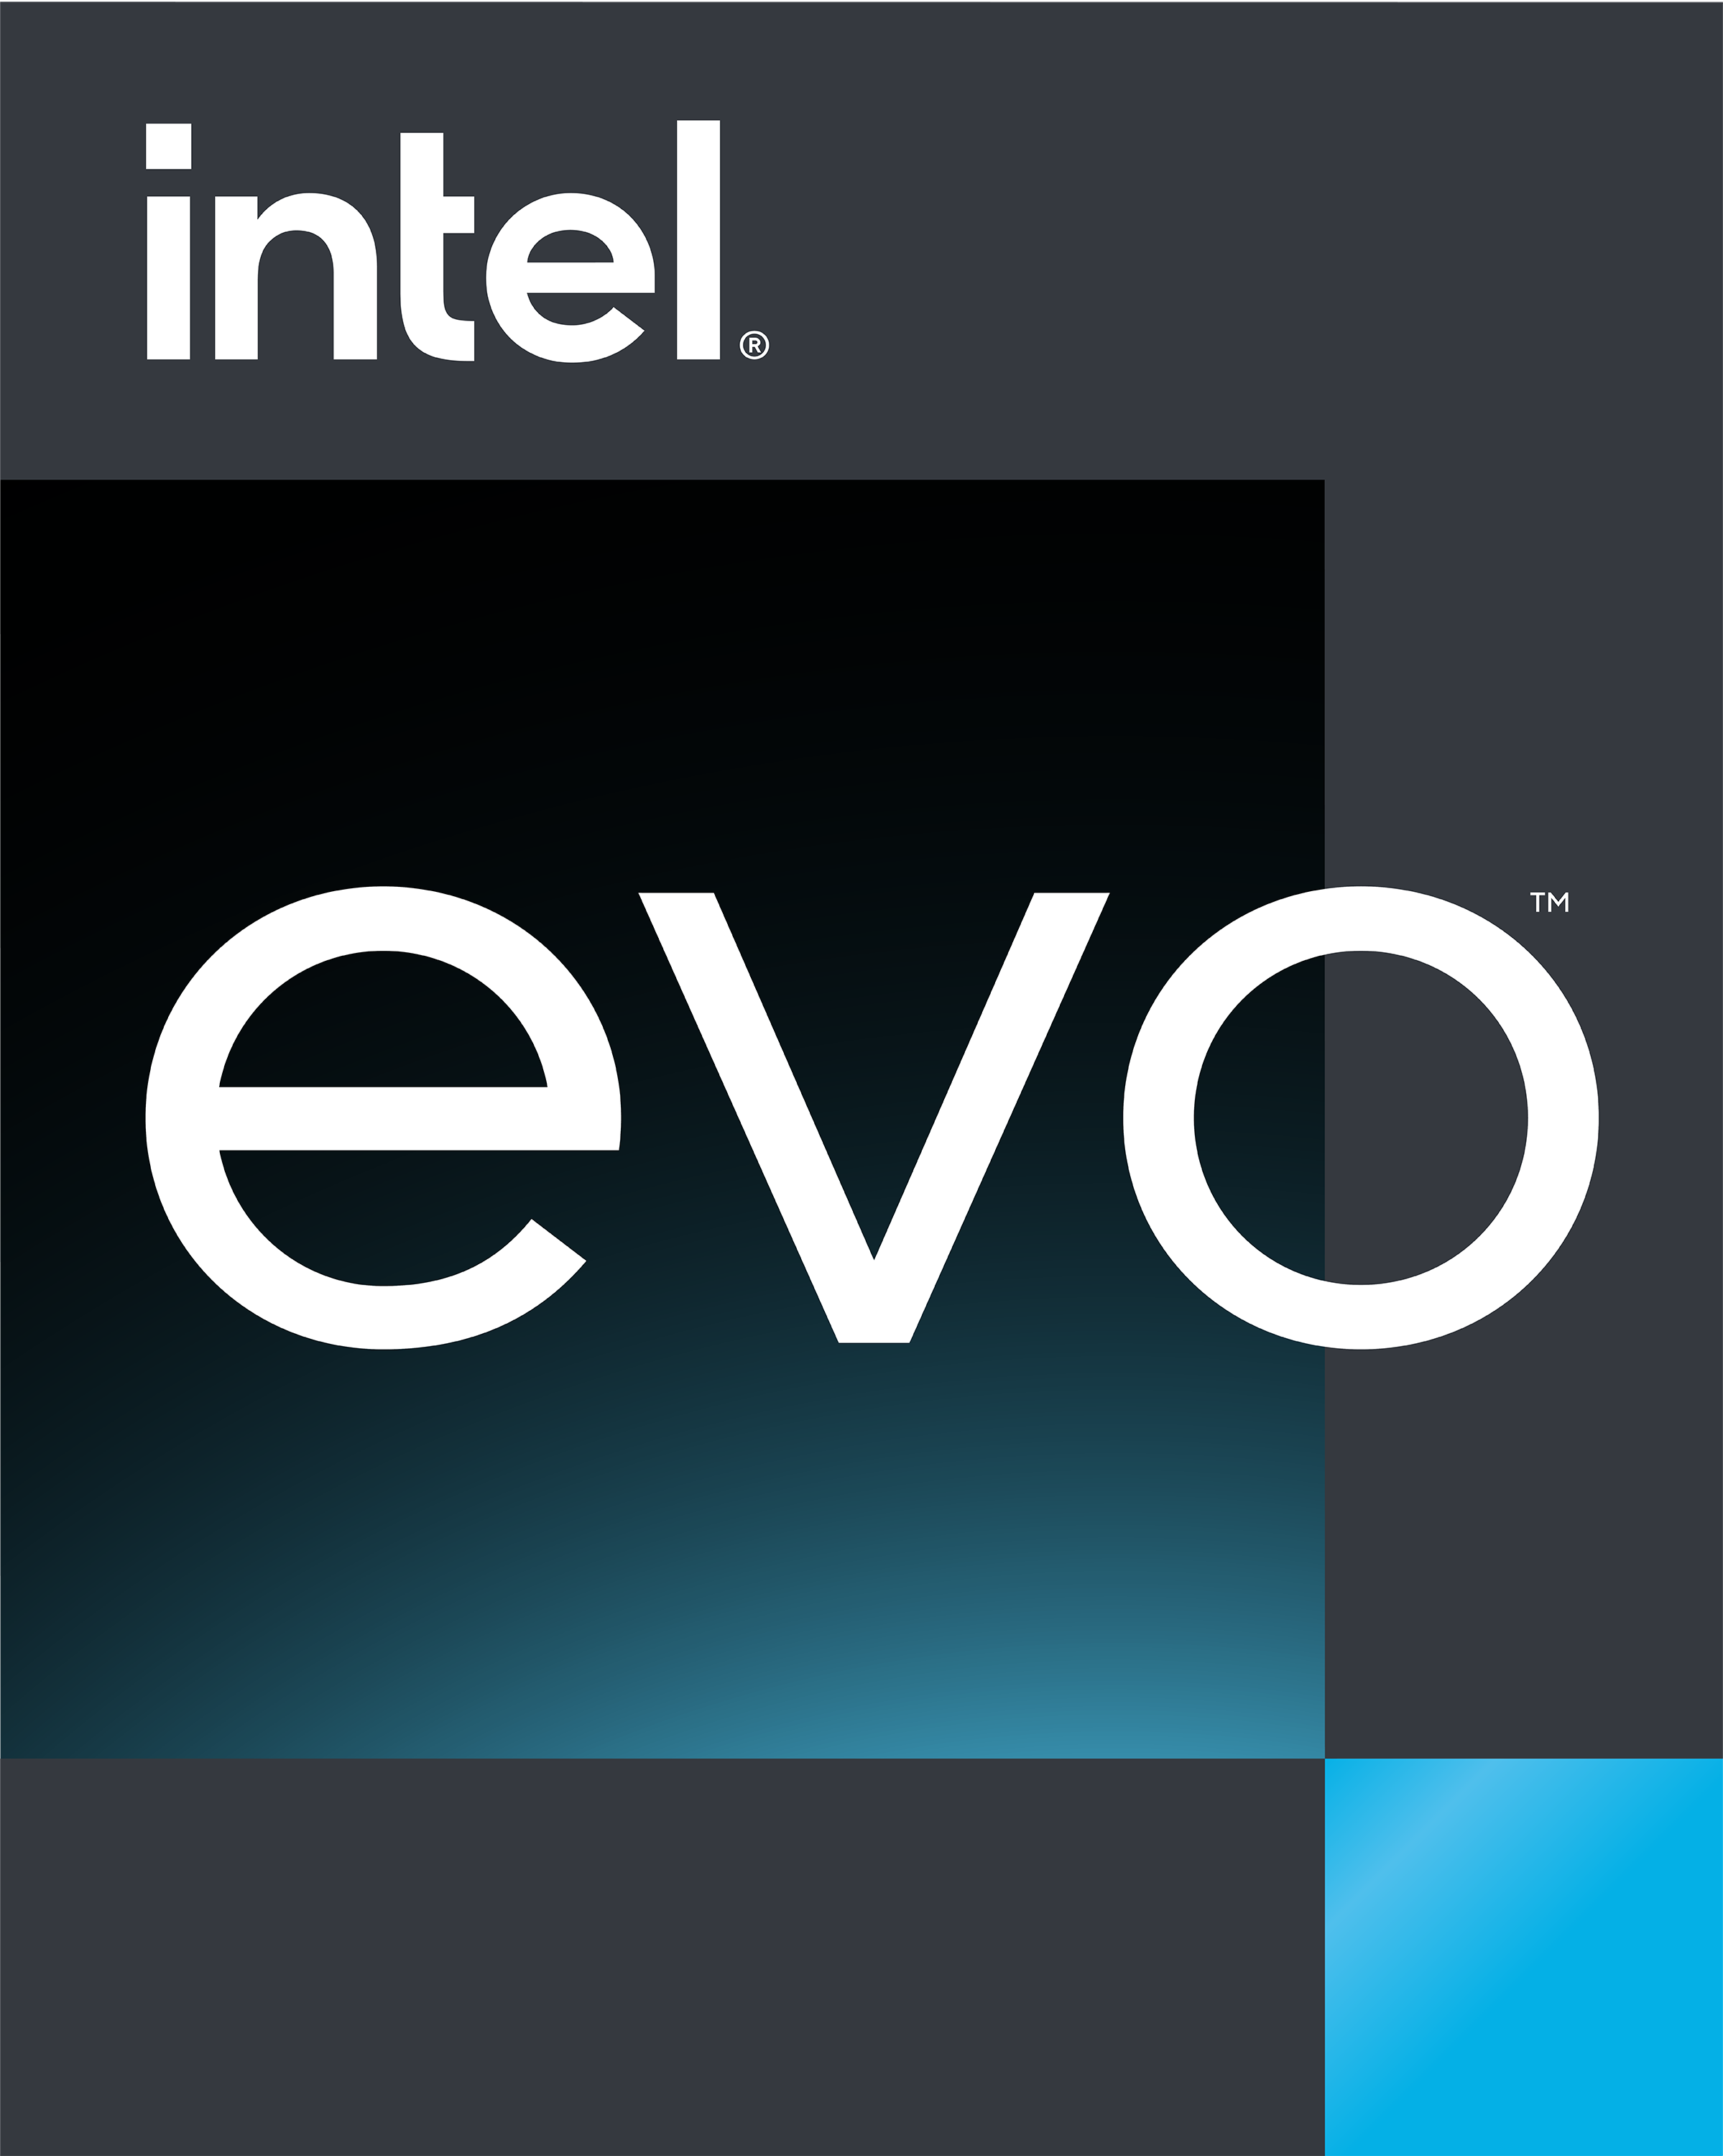 Intel EVO logo